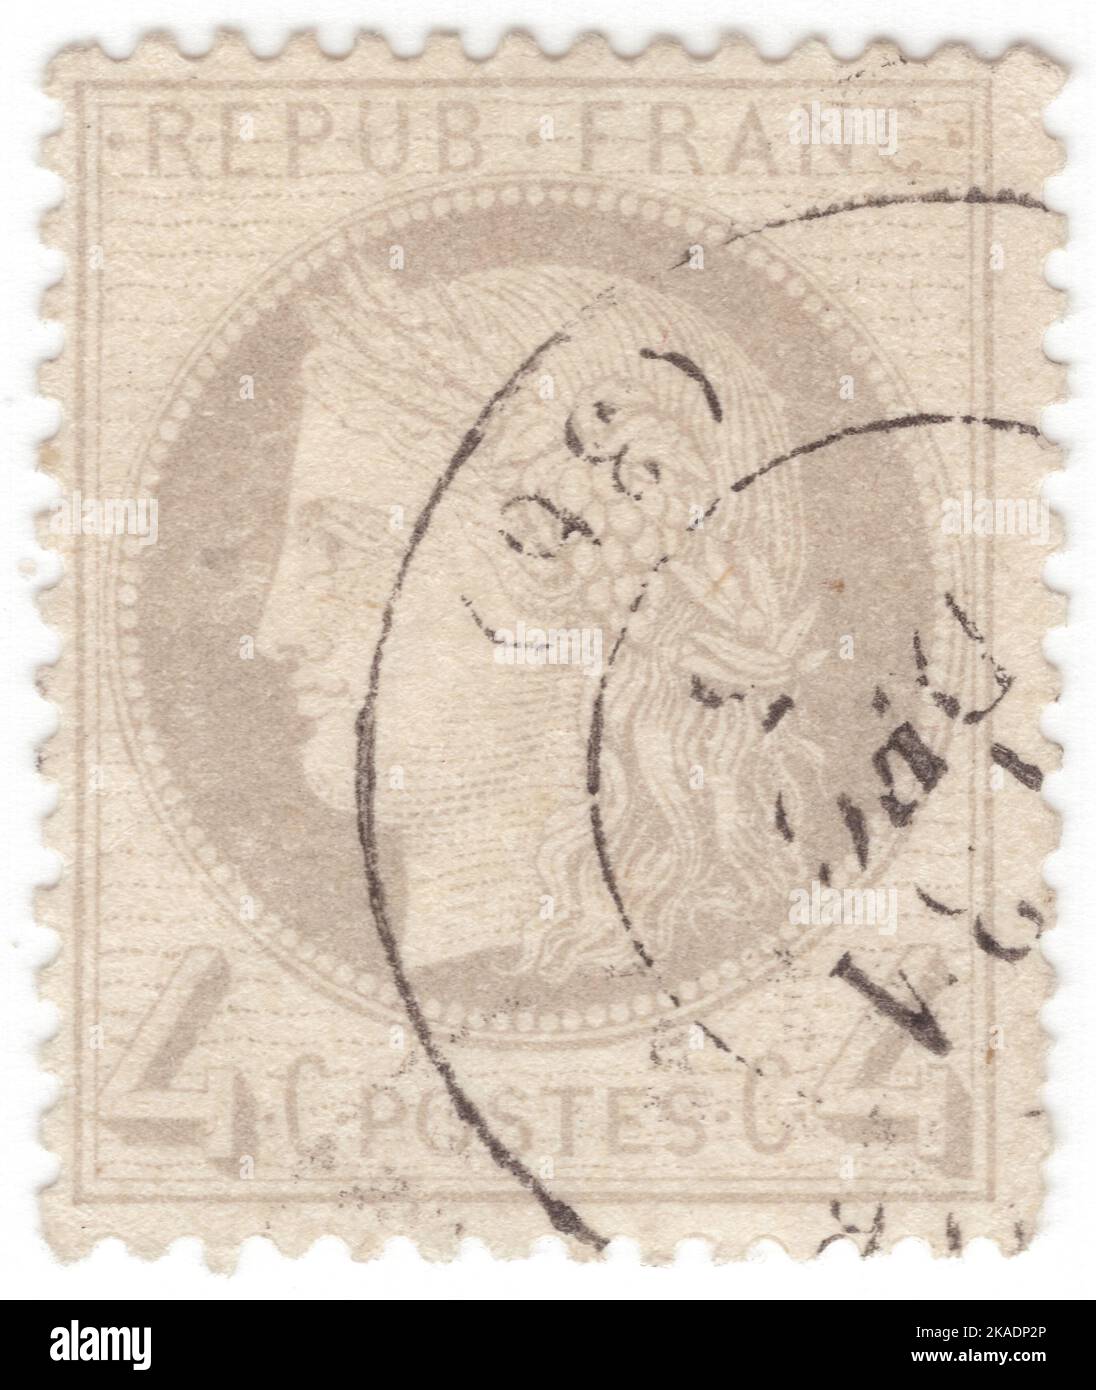 FRANCIA - 1870: Un francobollo grigio da 4 centesimi raffigurante Ceres — Dea dell'agricoltura, della fertilità, dei cereali, del raccolto, della maternità, la terra, e coltivò raccolti Foto Stock